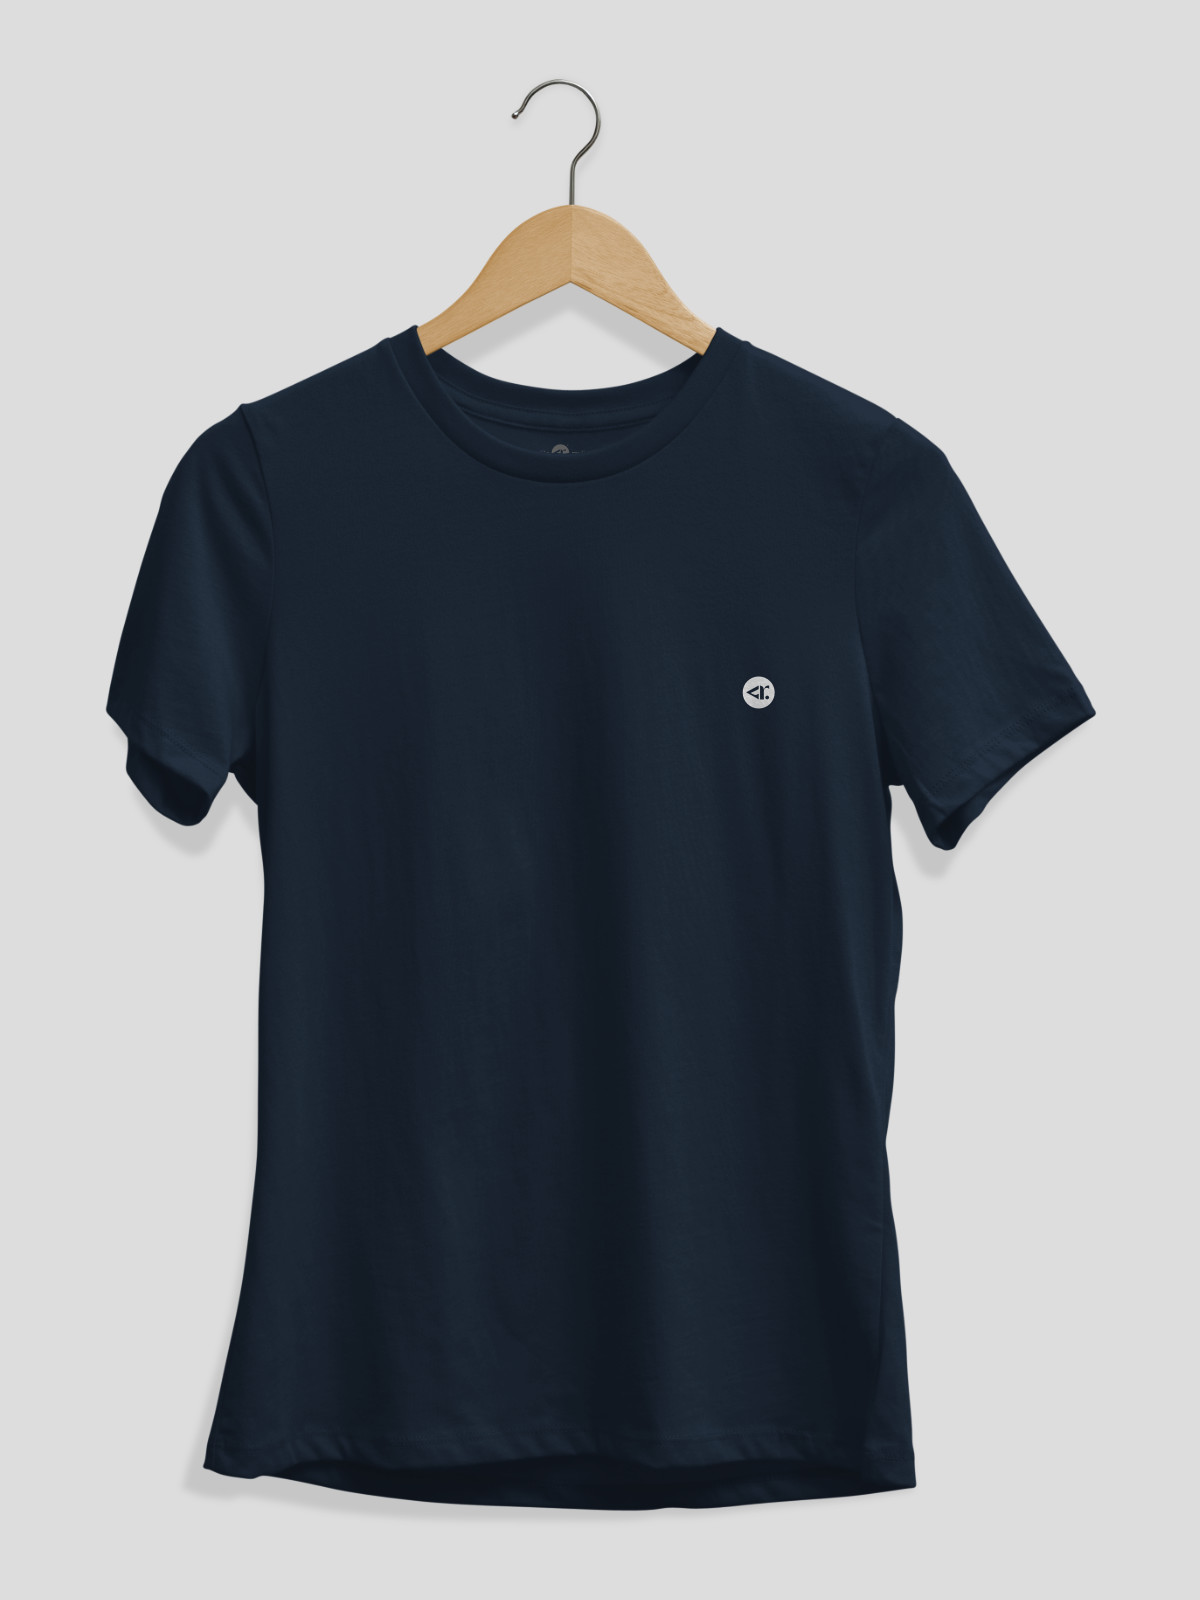 Original navy blue t-shirt